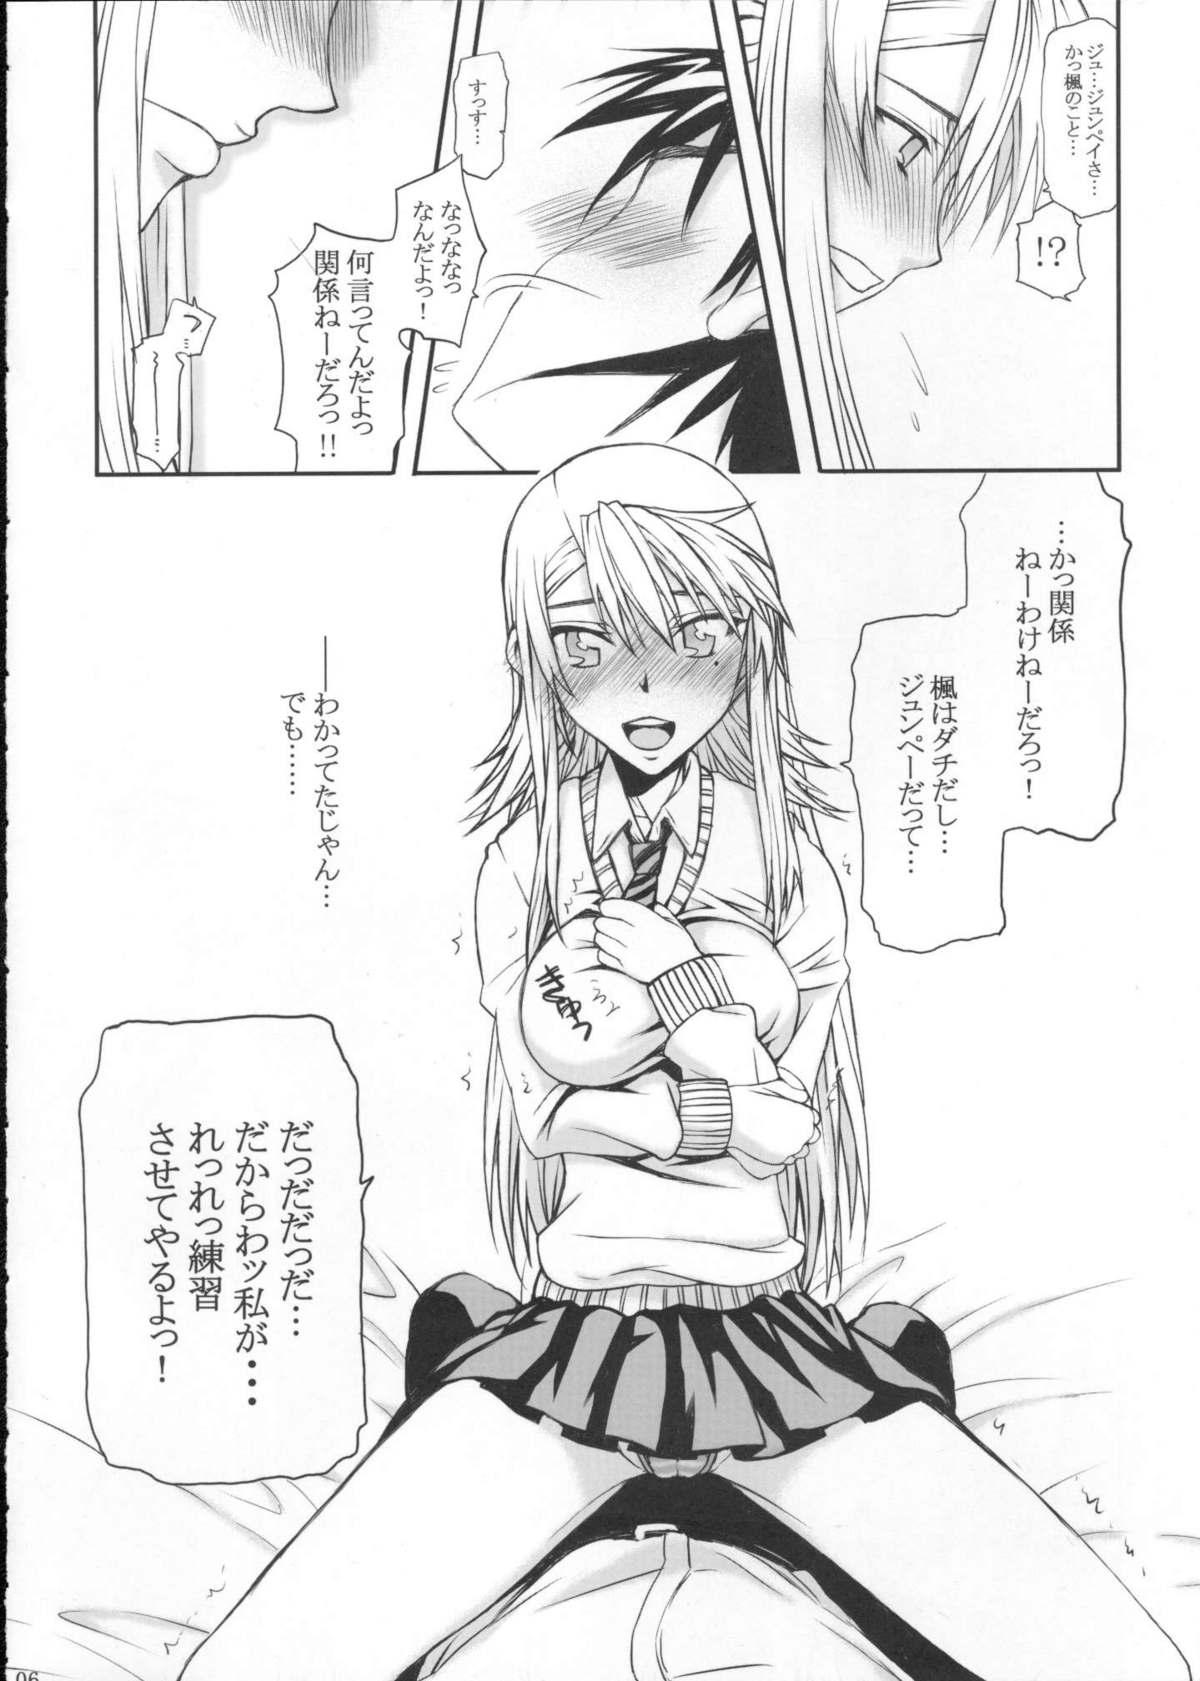 Licking Pussy Souyo! Minna Neko ni Natte Shimae!! - Nyan koi Art - Page 5